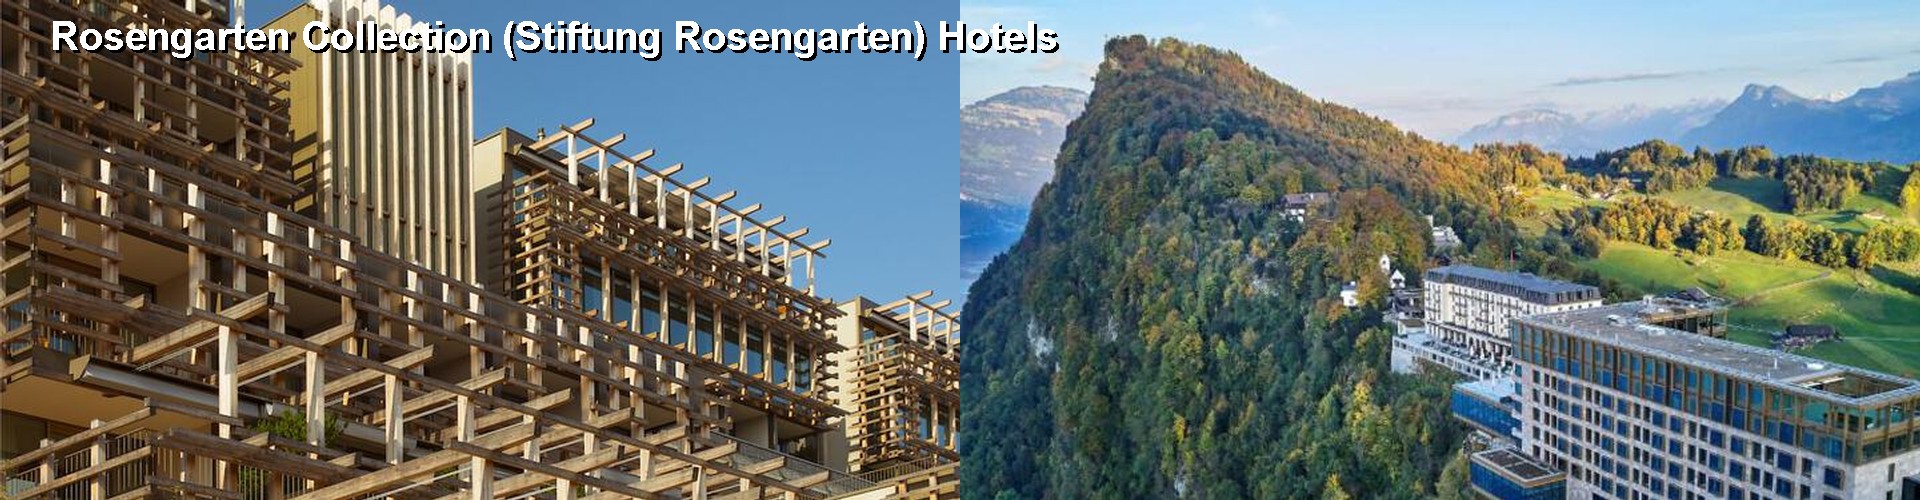 5 Best Hotels near Rosengarten Collection (Stiftung Rosengarten)